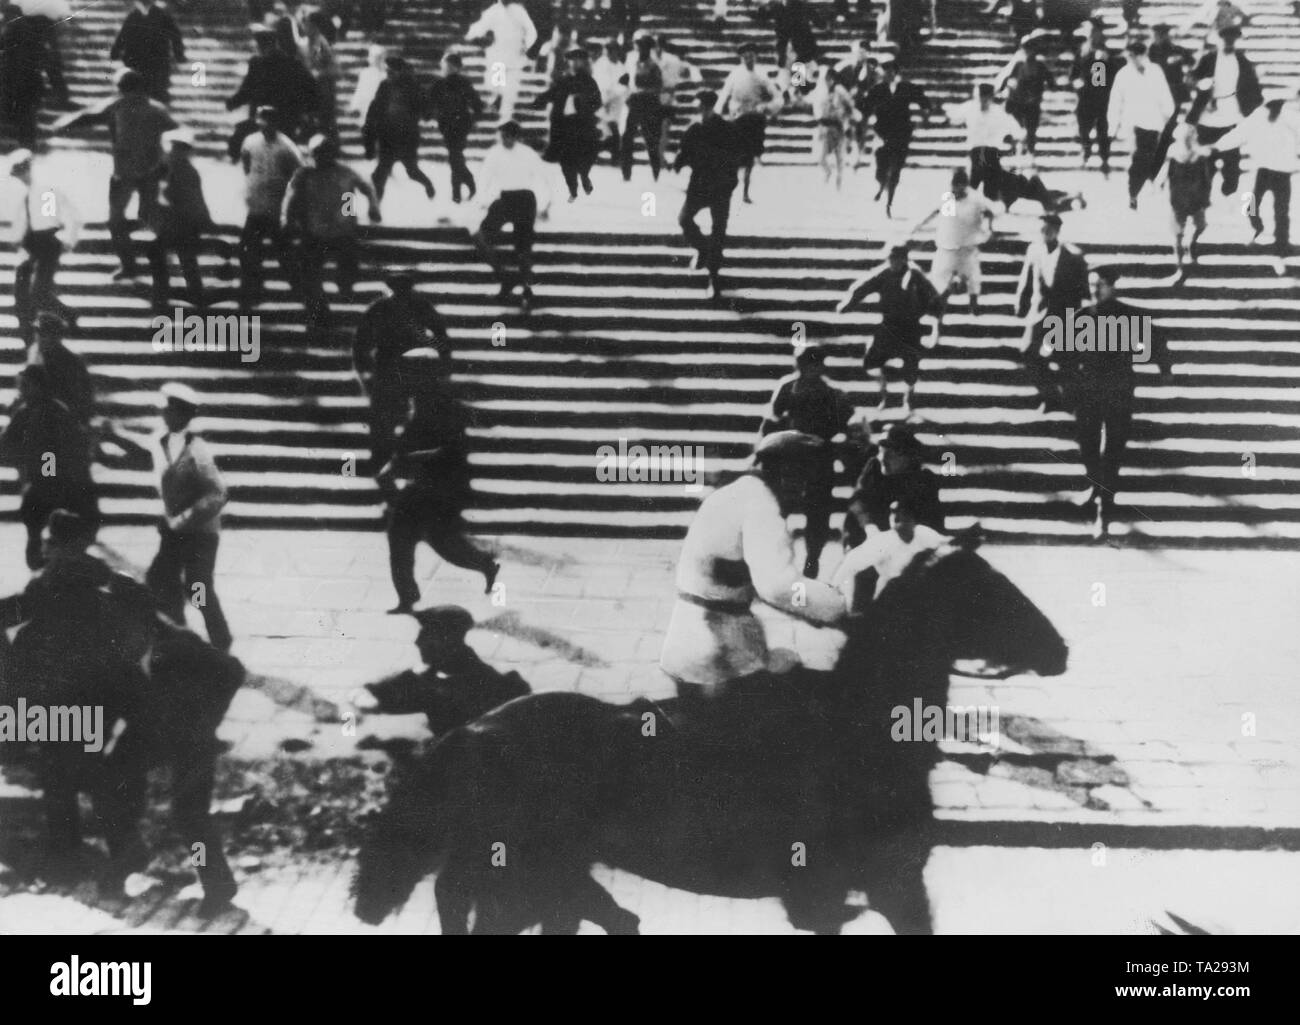 Scena del film 'Battleship Potemkin' shot di Sergei Eisenstein in 1925. Eisenstein racconta la storia dei marinai' ammutinamento sulla Corazzata durante la rivoluzione russa del 1905. Foto Stock